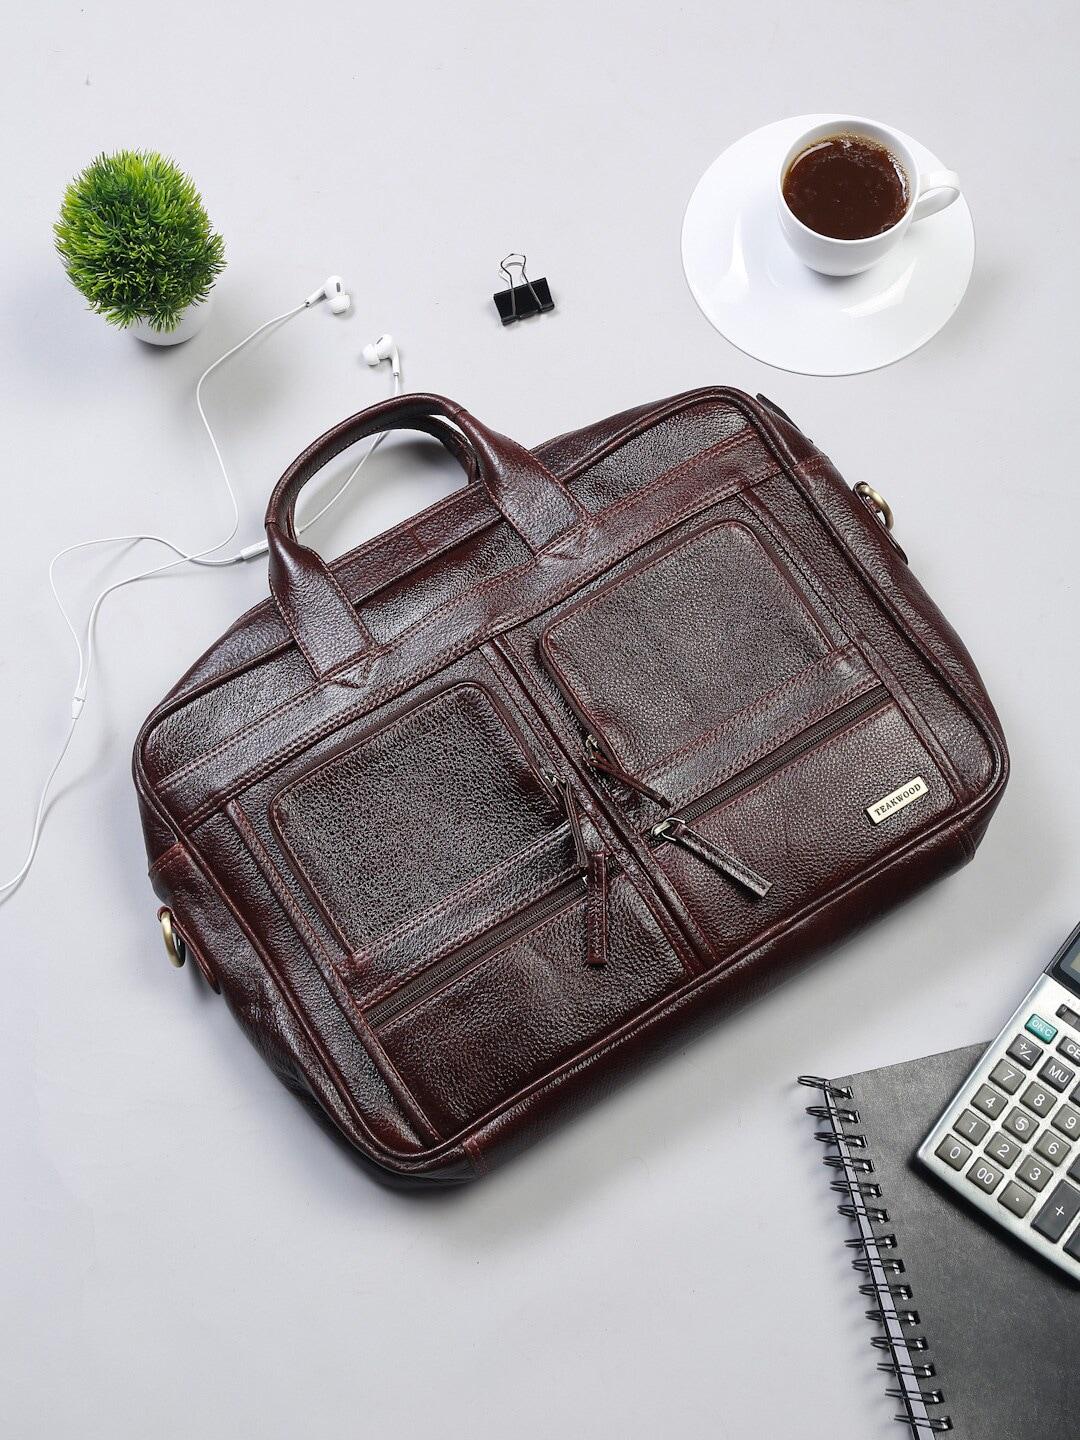 teakwood leathers unisex brown textured genuine leather laptop bag